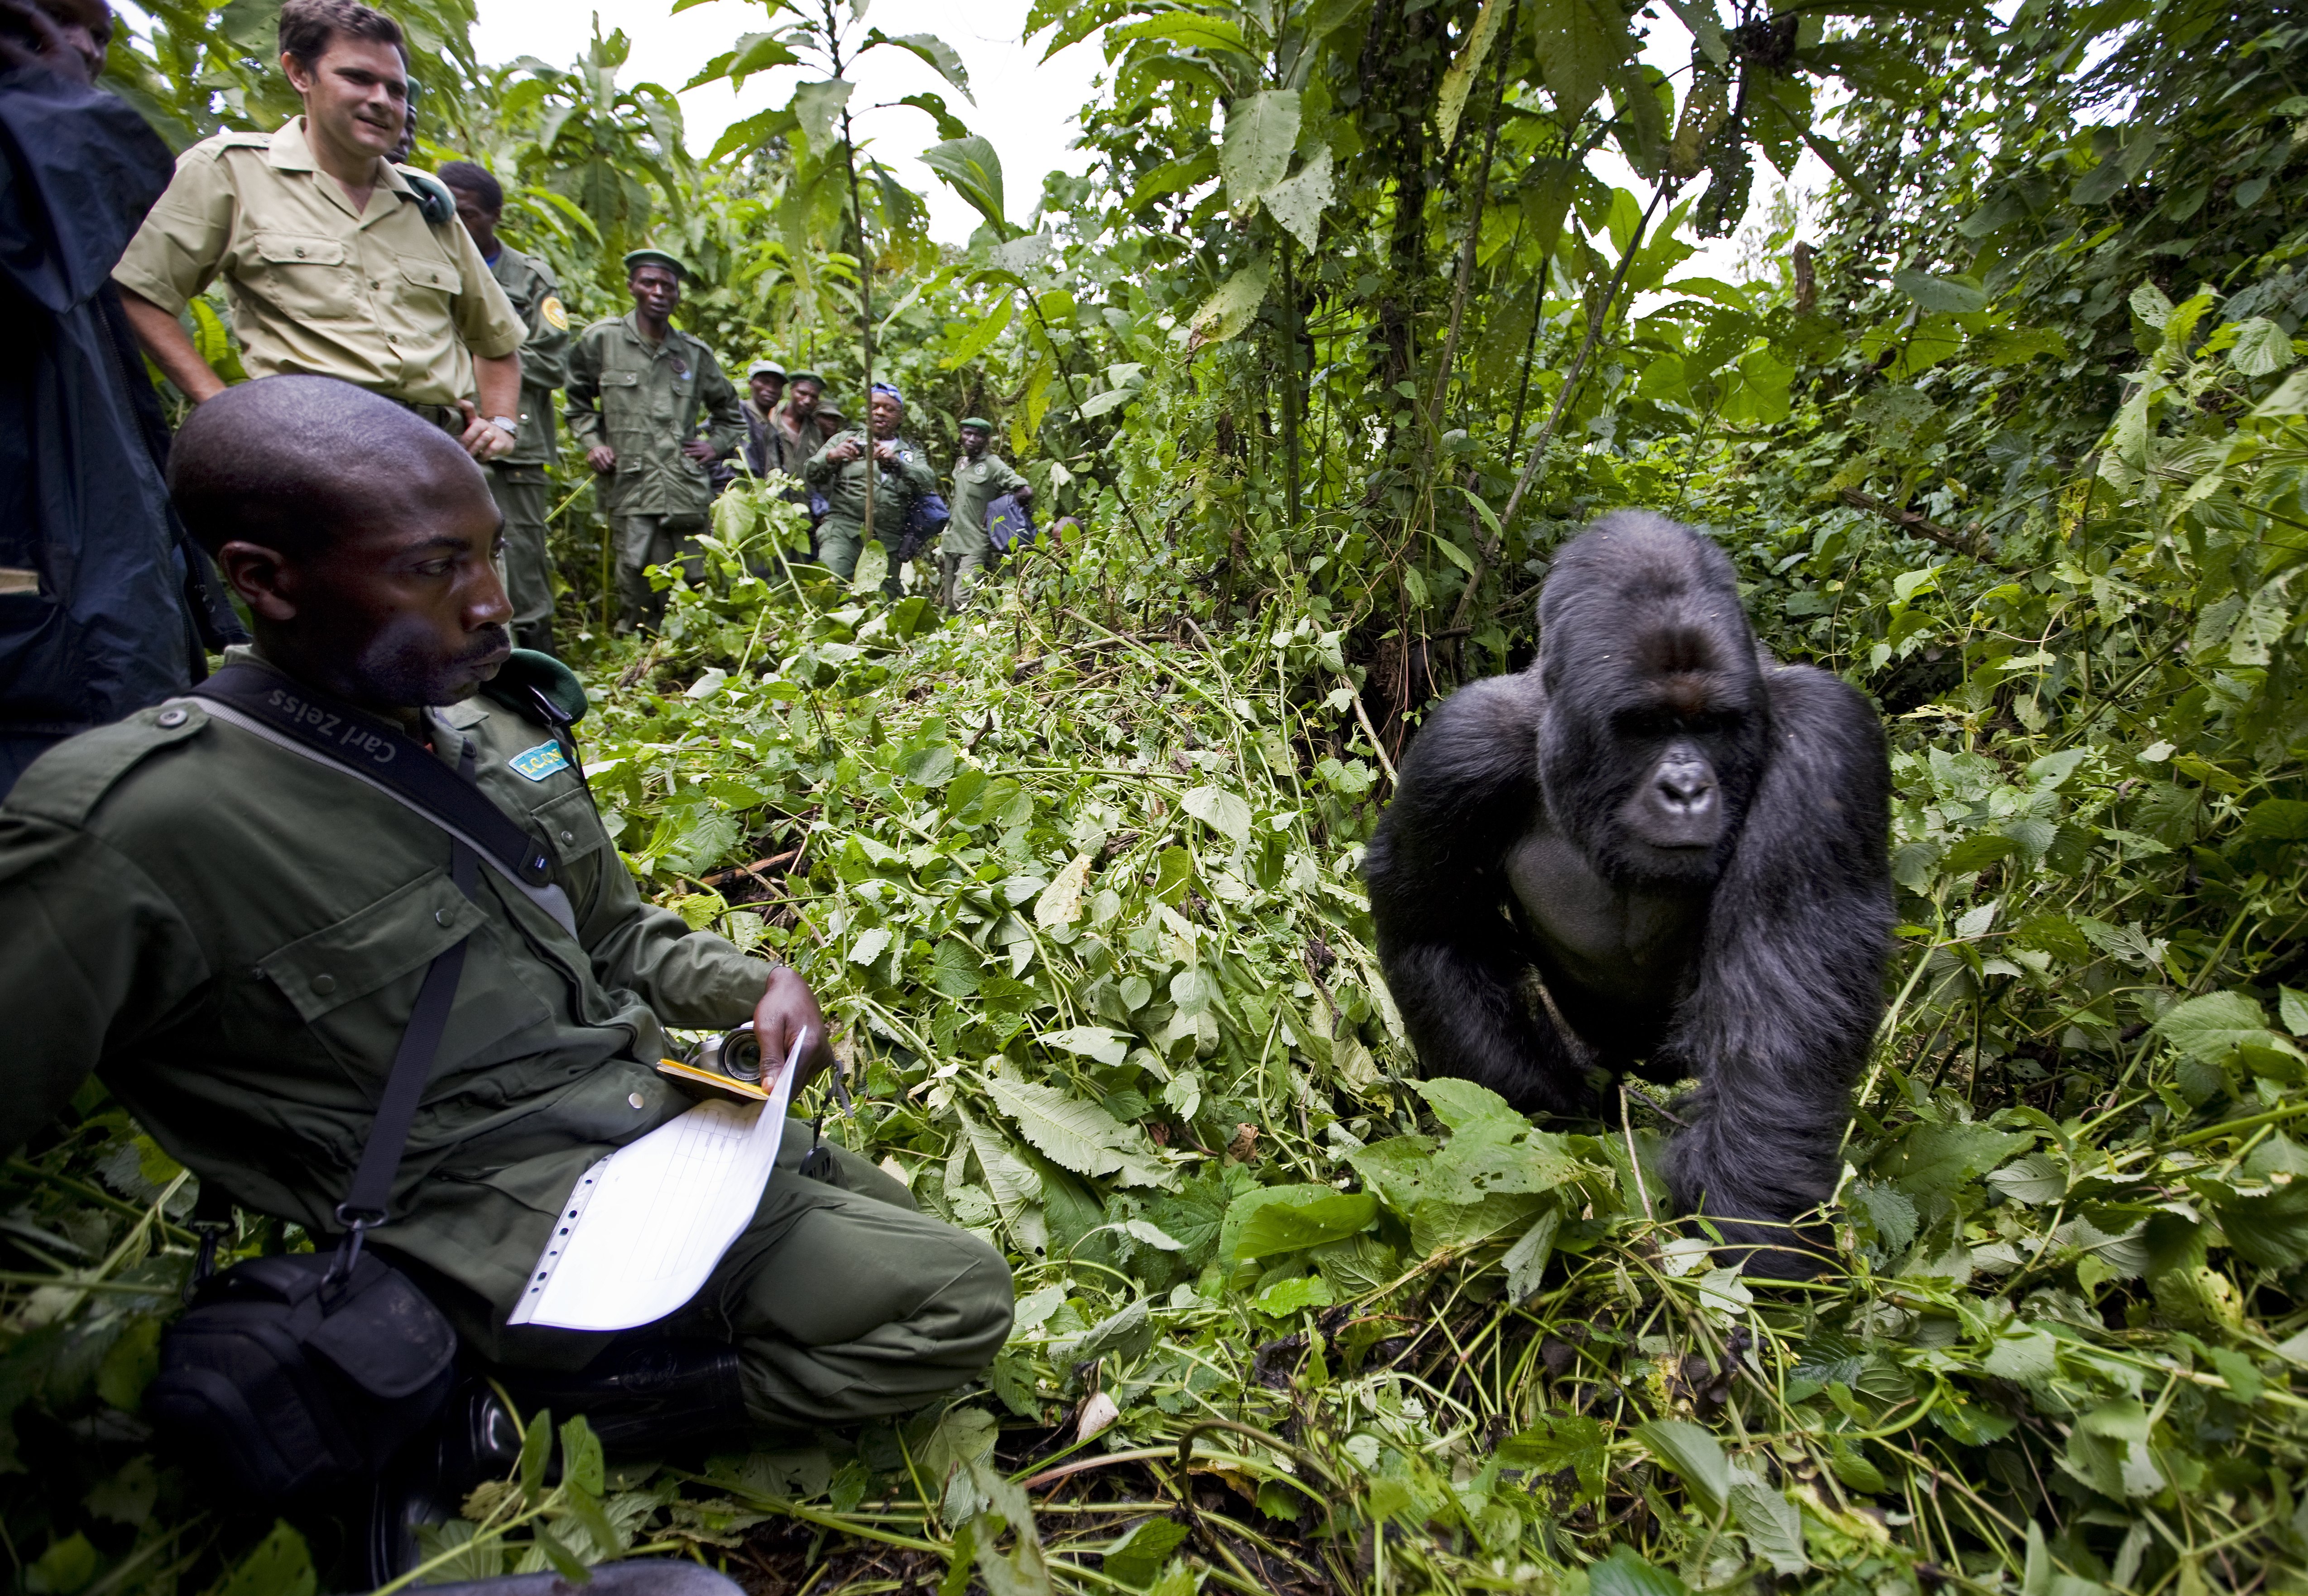 The Rangers of Virunga National Park